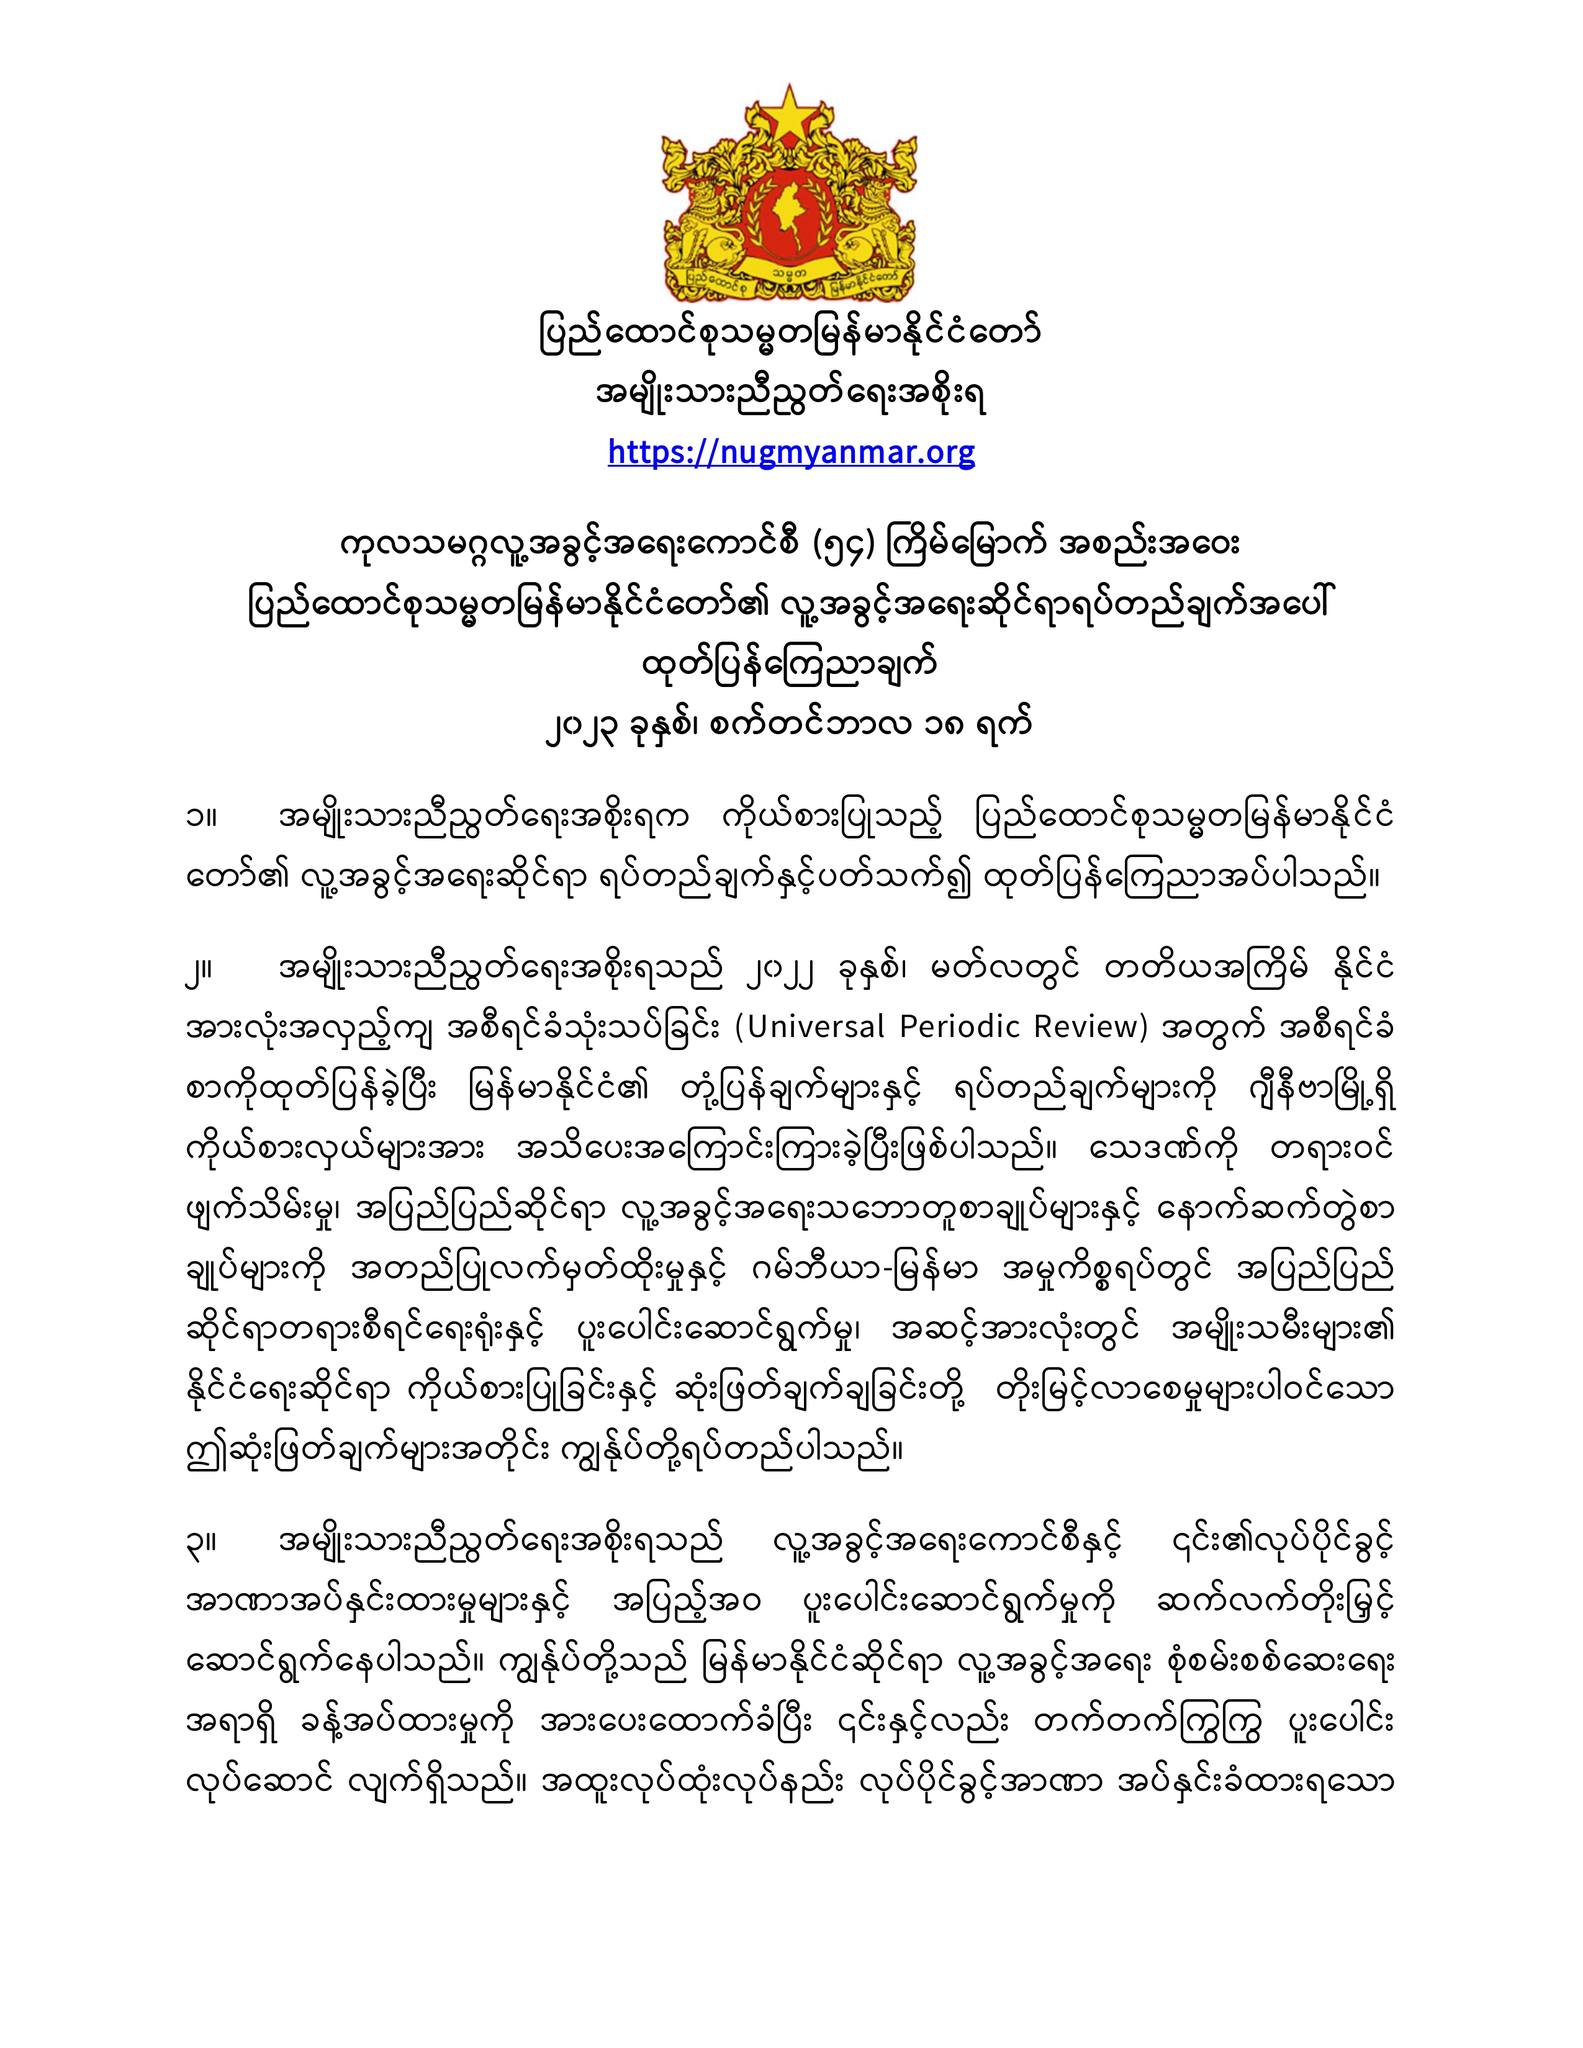 ကုလသမဂ္ဂလူ့အခွင့်အရေးကောင်စီ (၅၄) ကြိမ်မြောက် အစည်းအဝေး ပြည်ထောင်စုသမ္မတမြန်မာနိုင်ငံတော်၏ လူ့အခွင့်အရေးဆိုင်ရာရပ်တည်ချက်အပေါ် ထုတ်ပြန်ကြေညာချက်